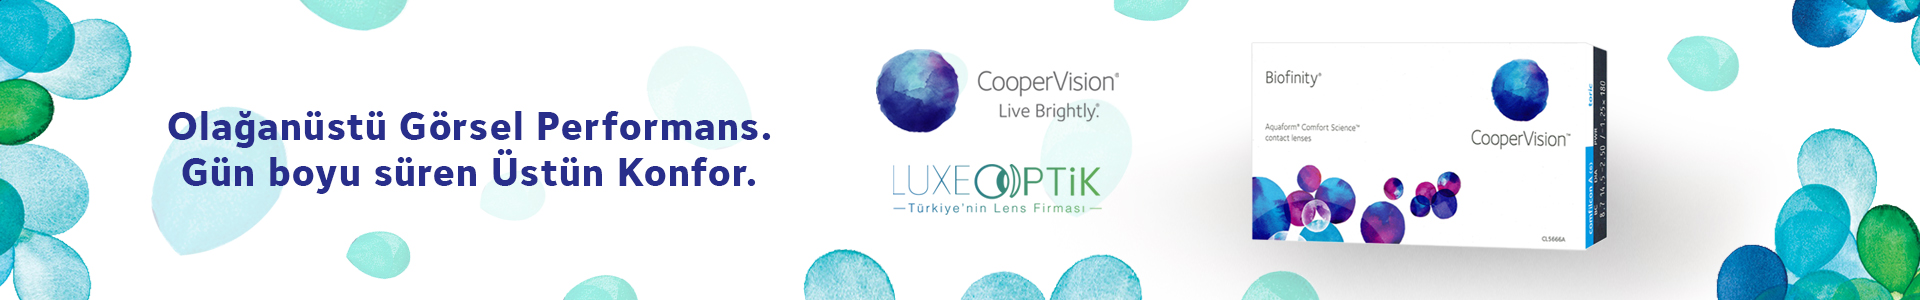 cooper vision lensler